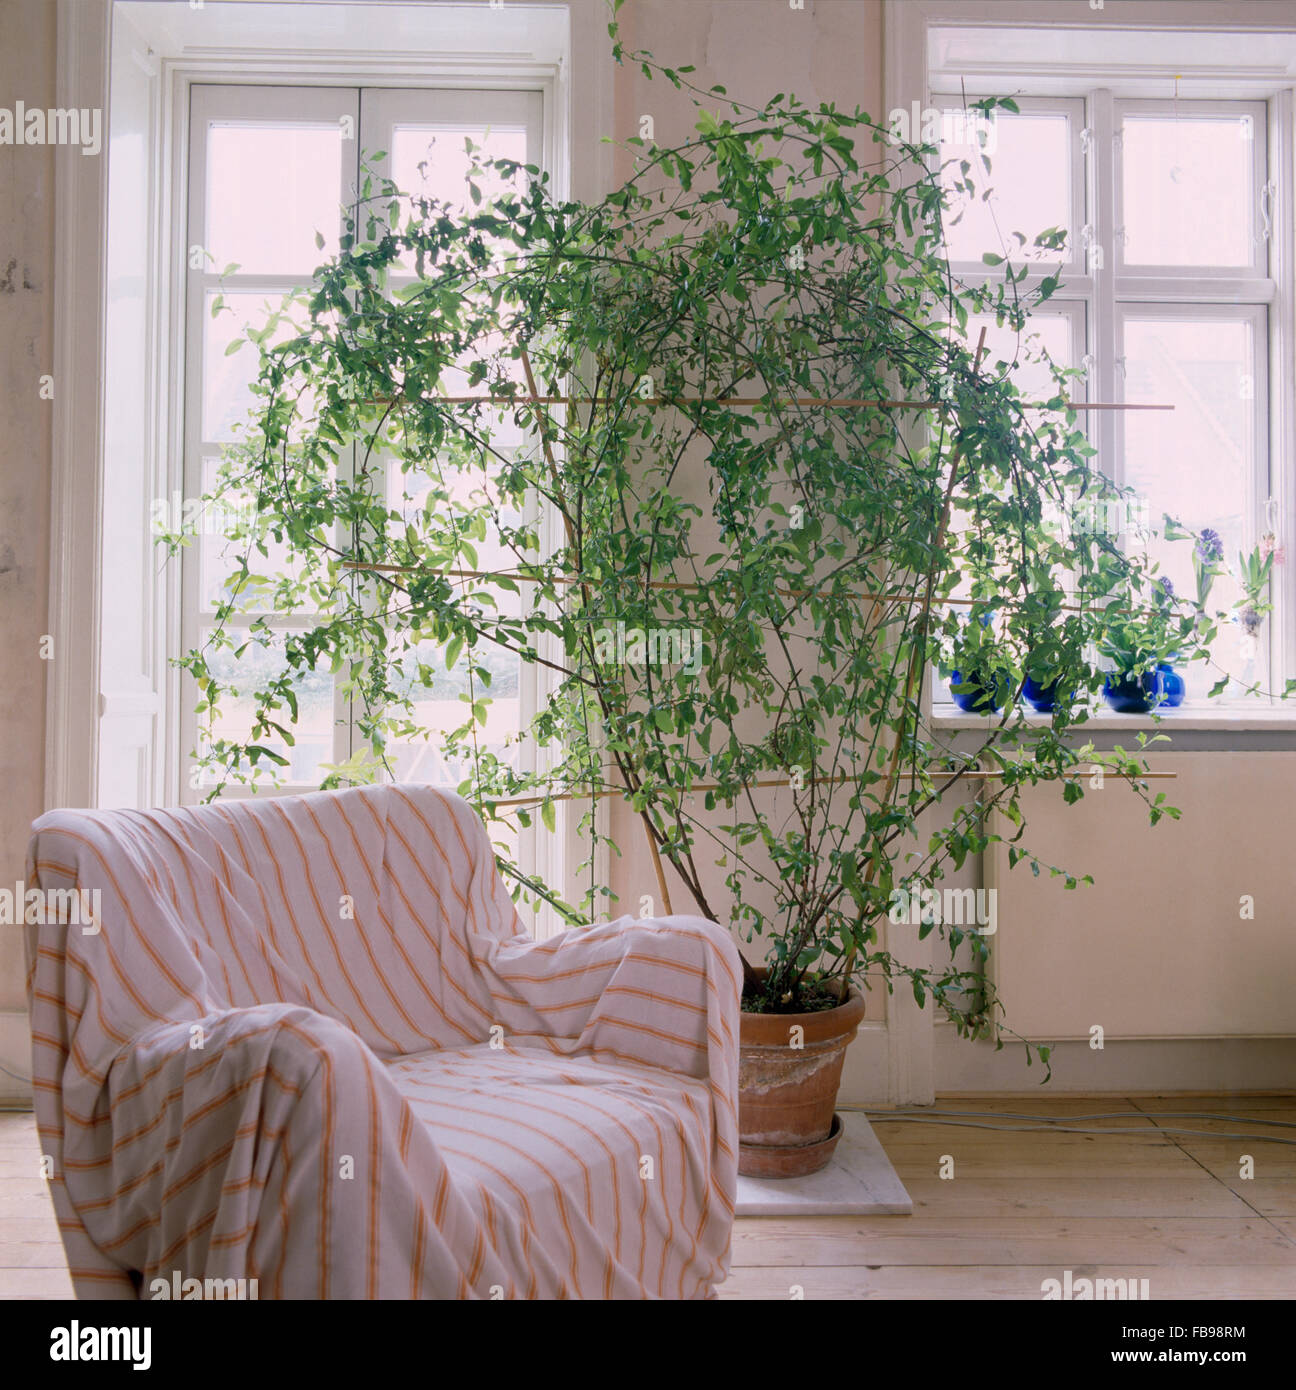 Gestreifte auf Sessel in dänischen Wohnung mit hohen grünen Pflanze in einen Topf vor dem Fenster zu werfen Stockfoto